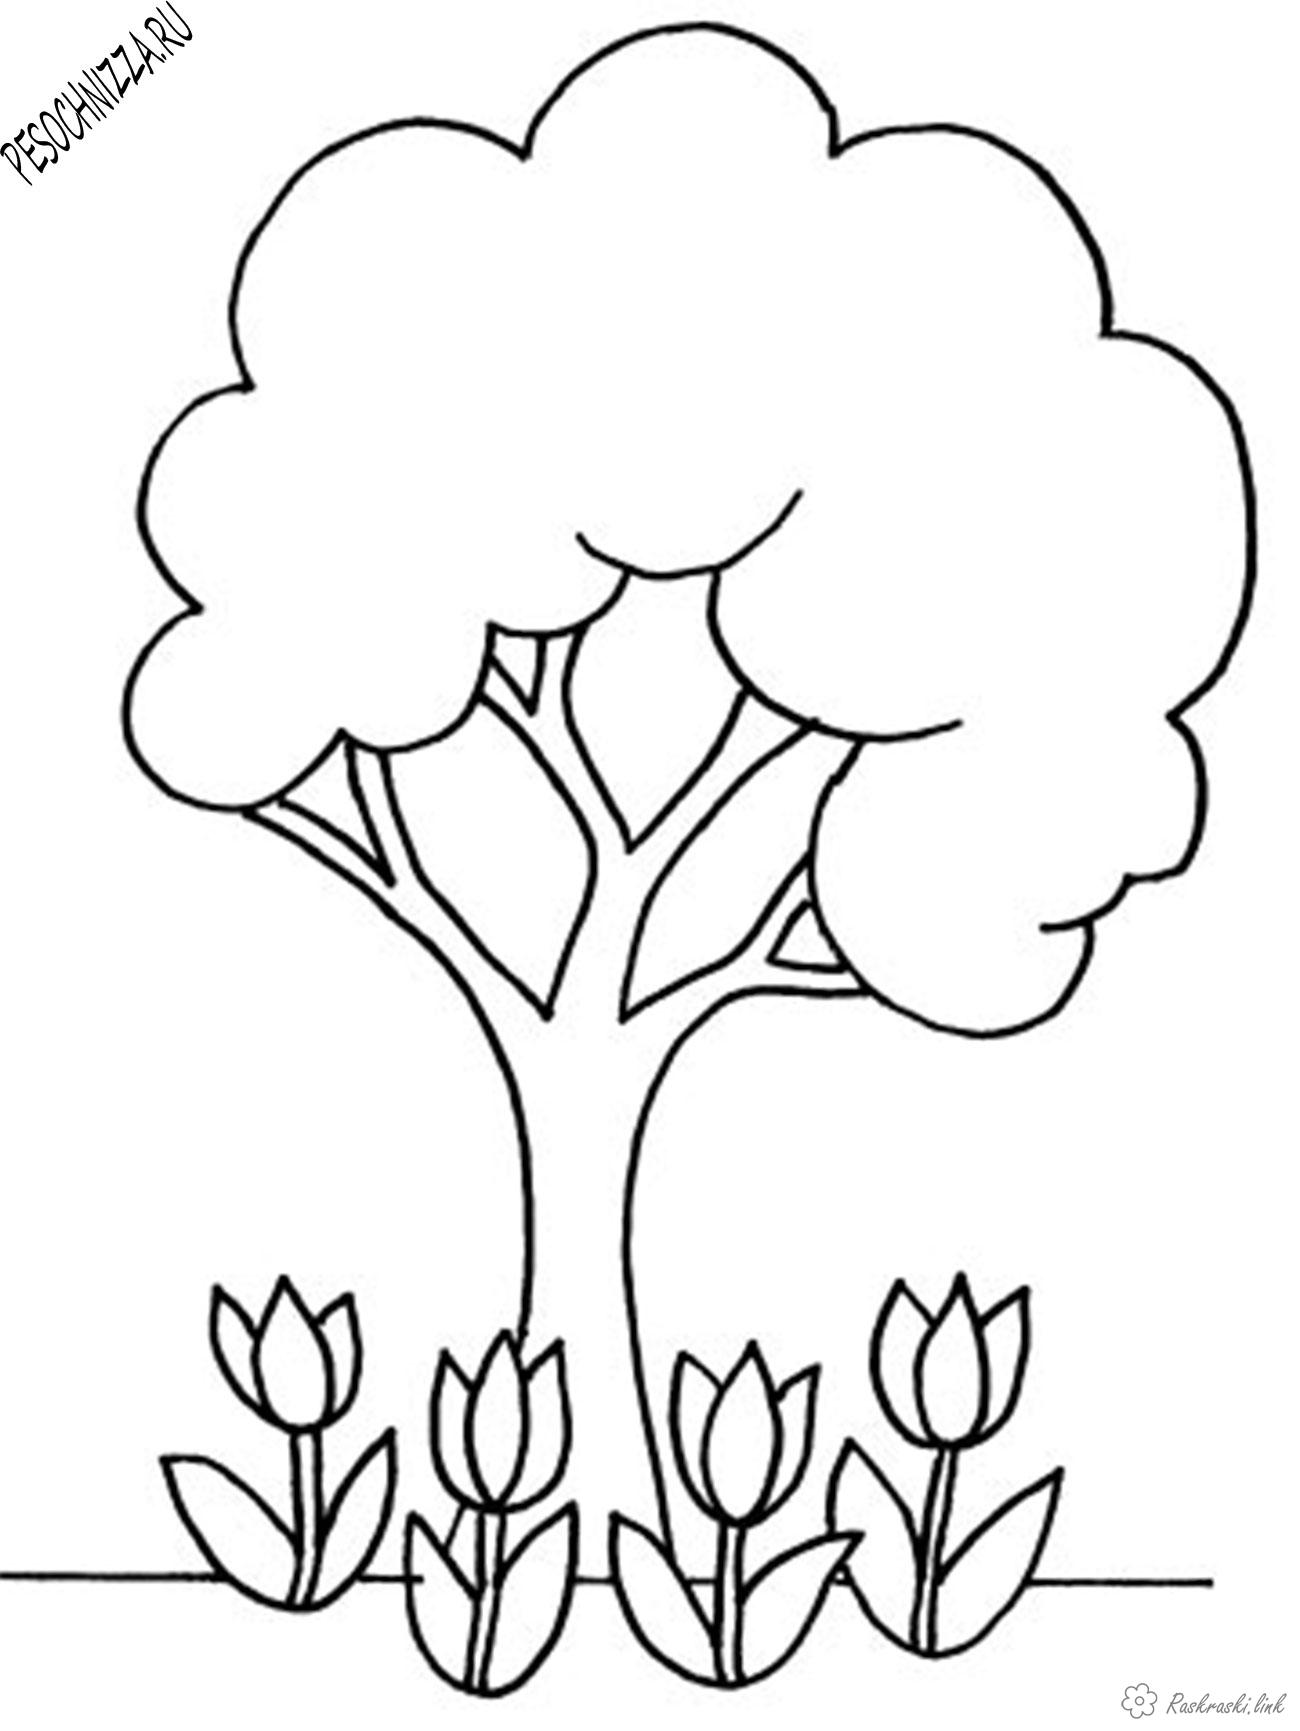 Розмальовки Прості розмальовки для малюків Дитяча розфарбування дерева, квіти